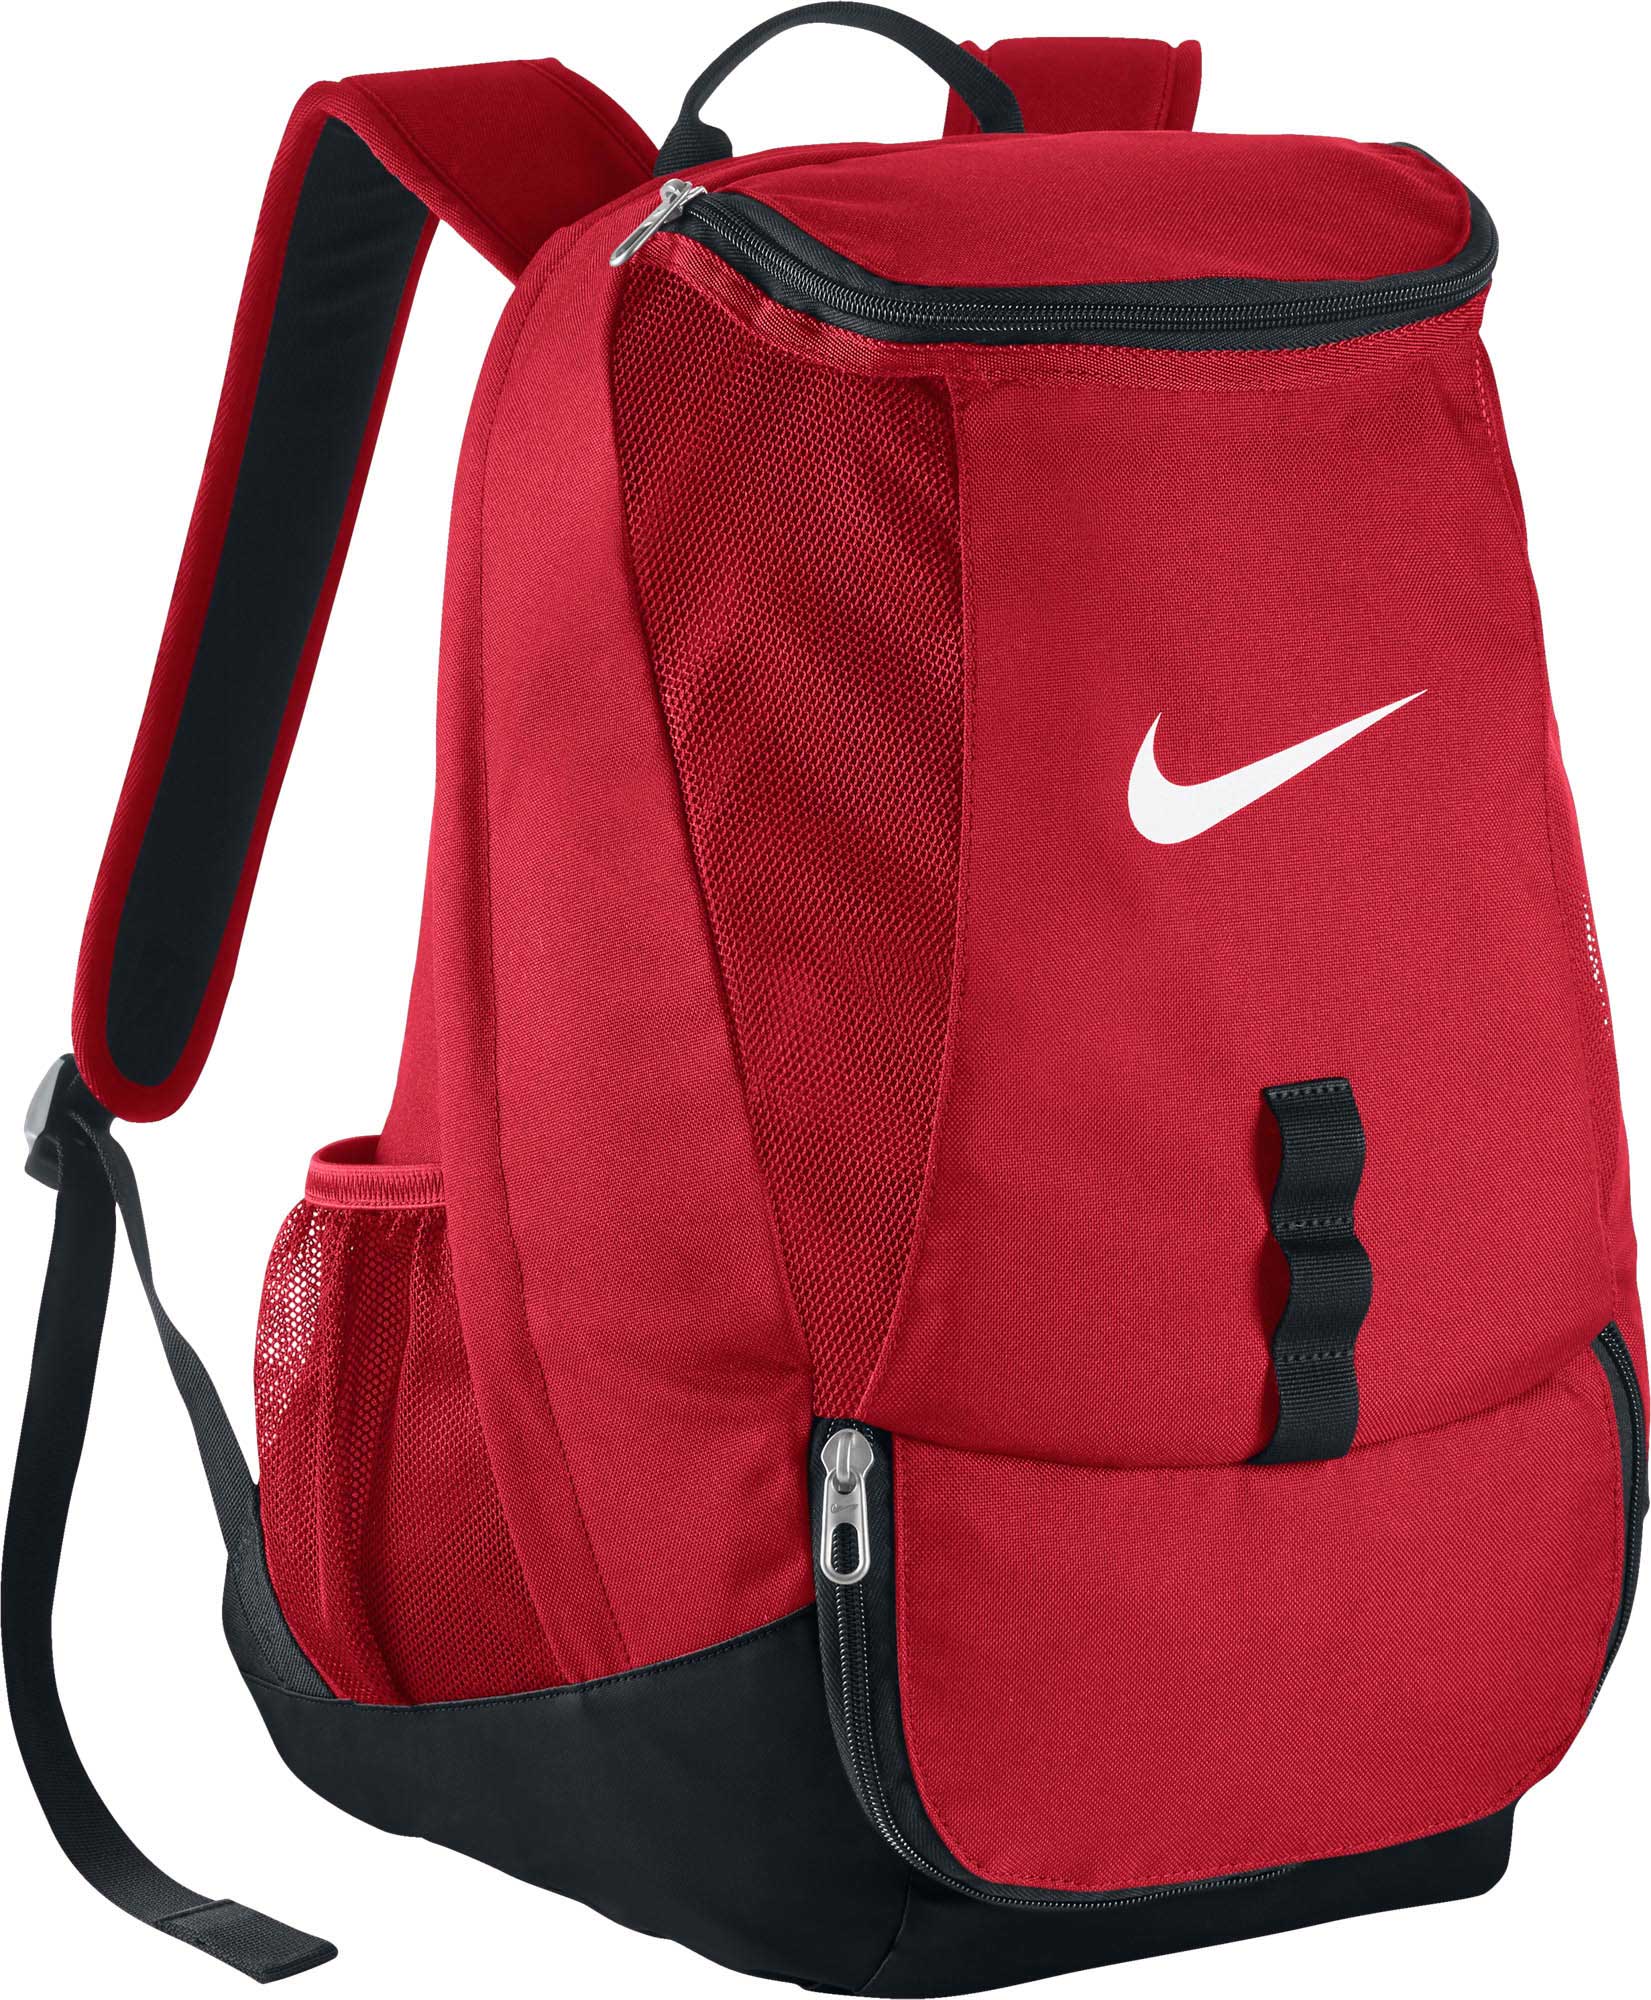 soccer backpack nike